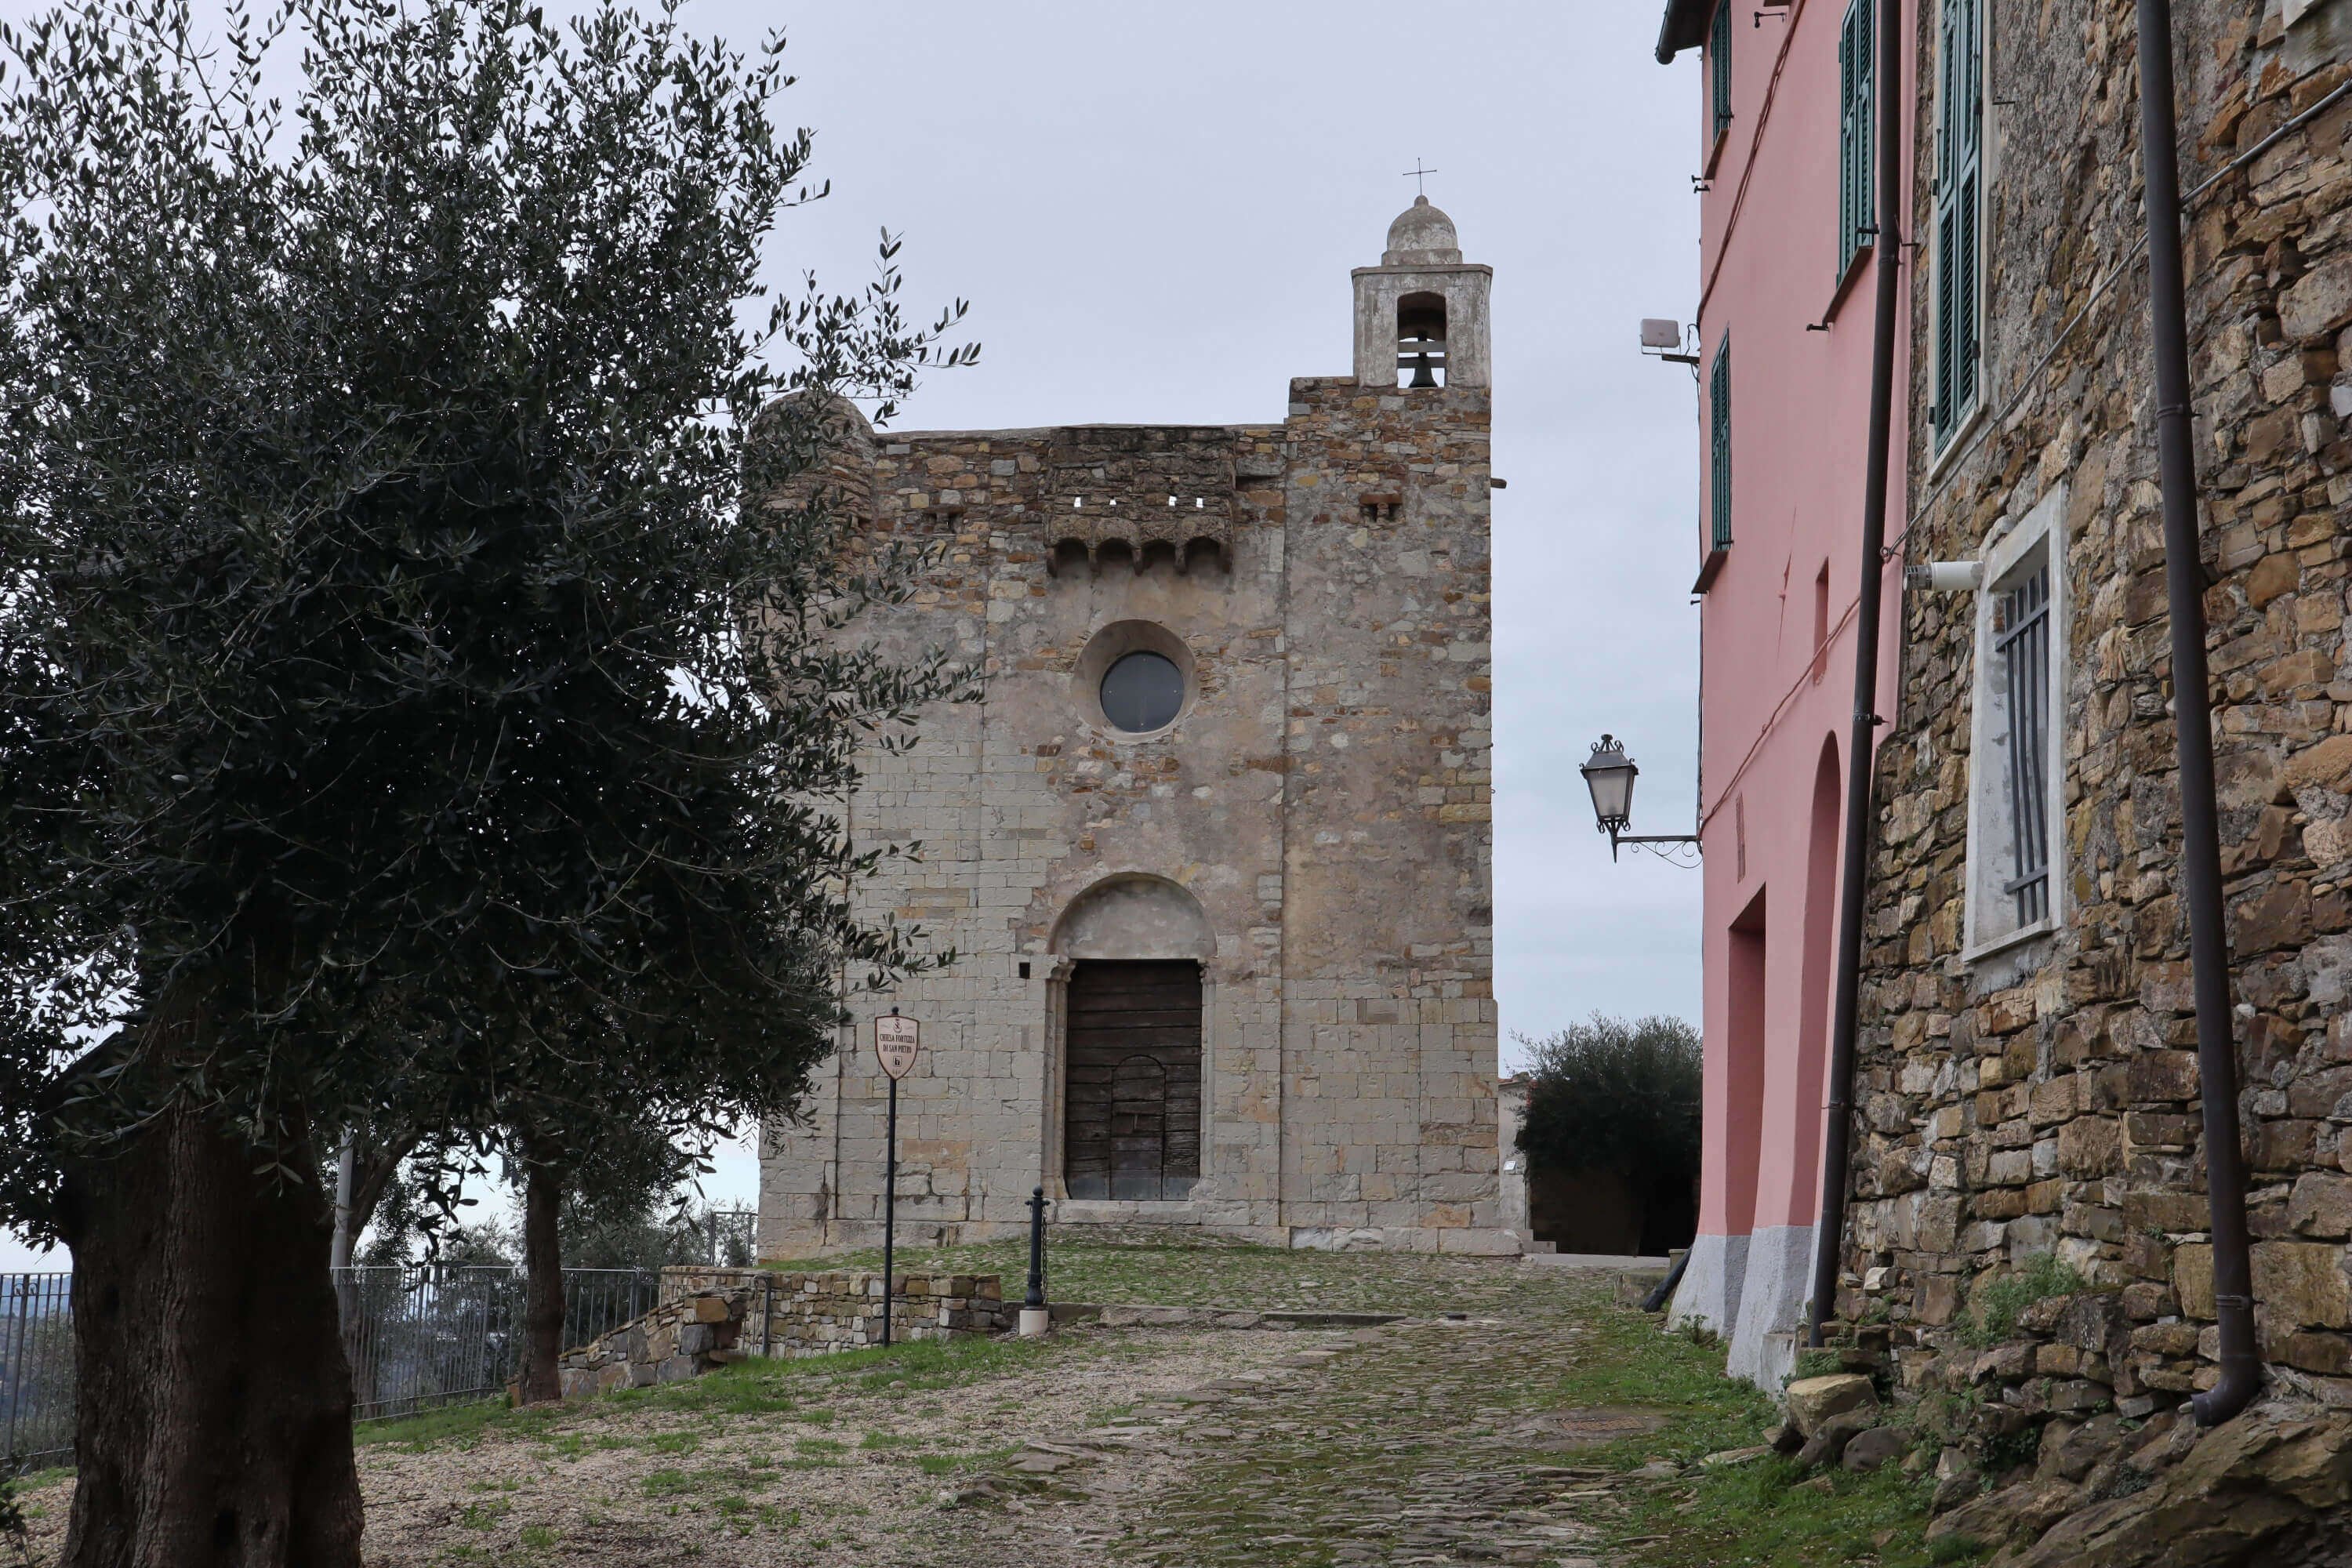 the fortress-church of Lingueglietta